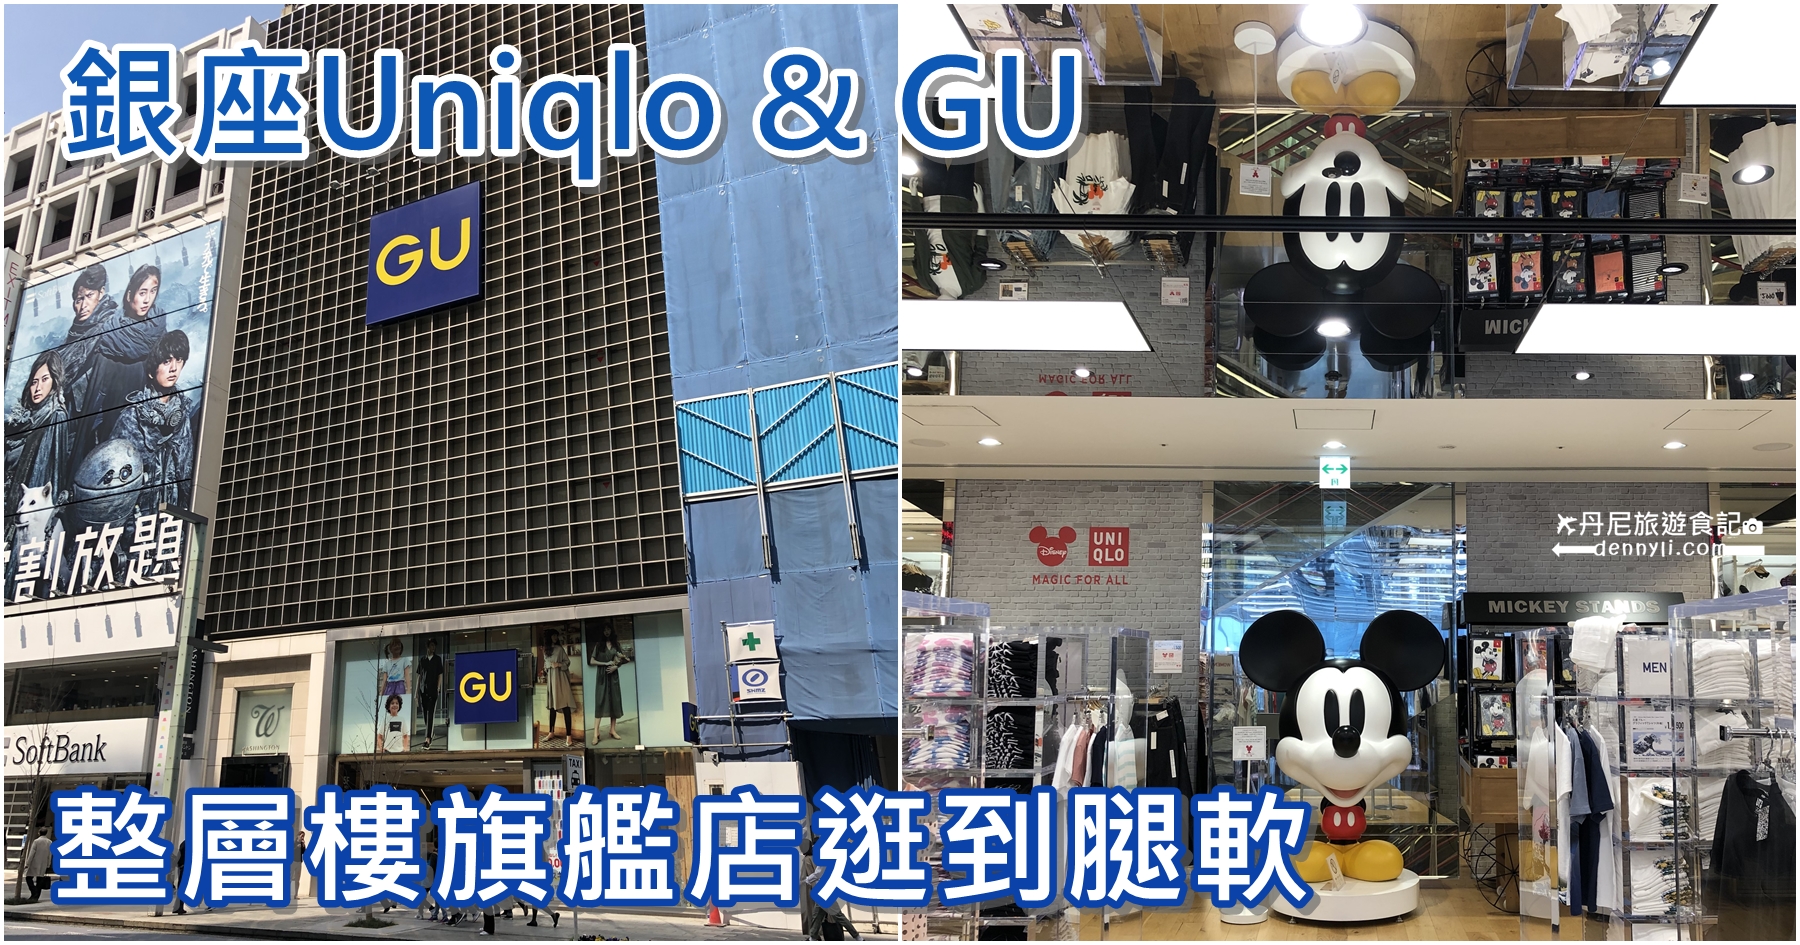 東京銀座Uniqlo&GU